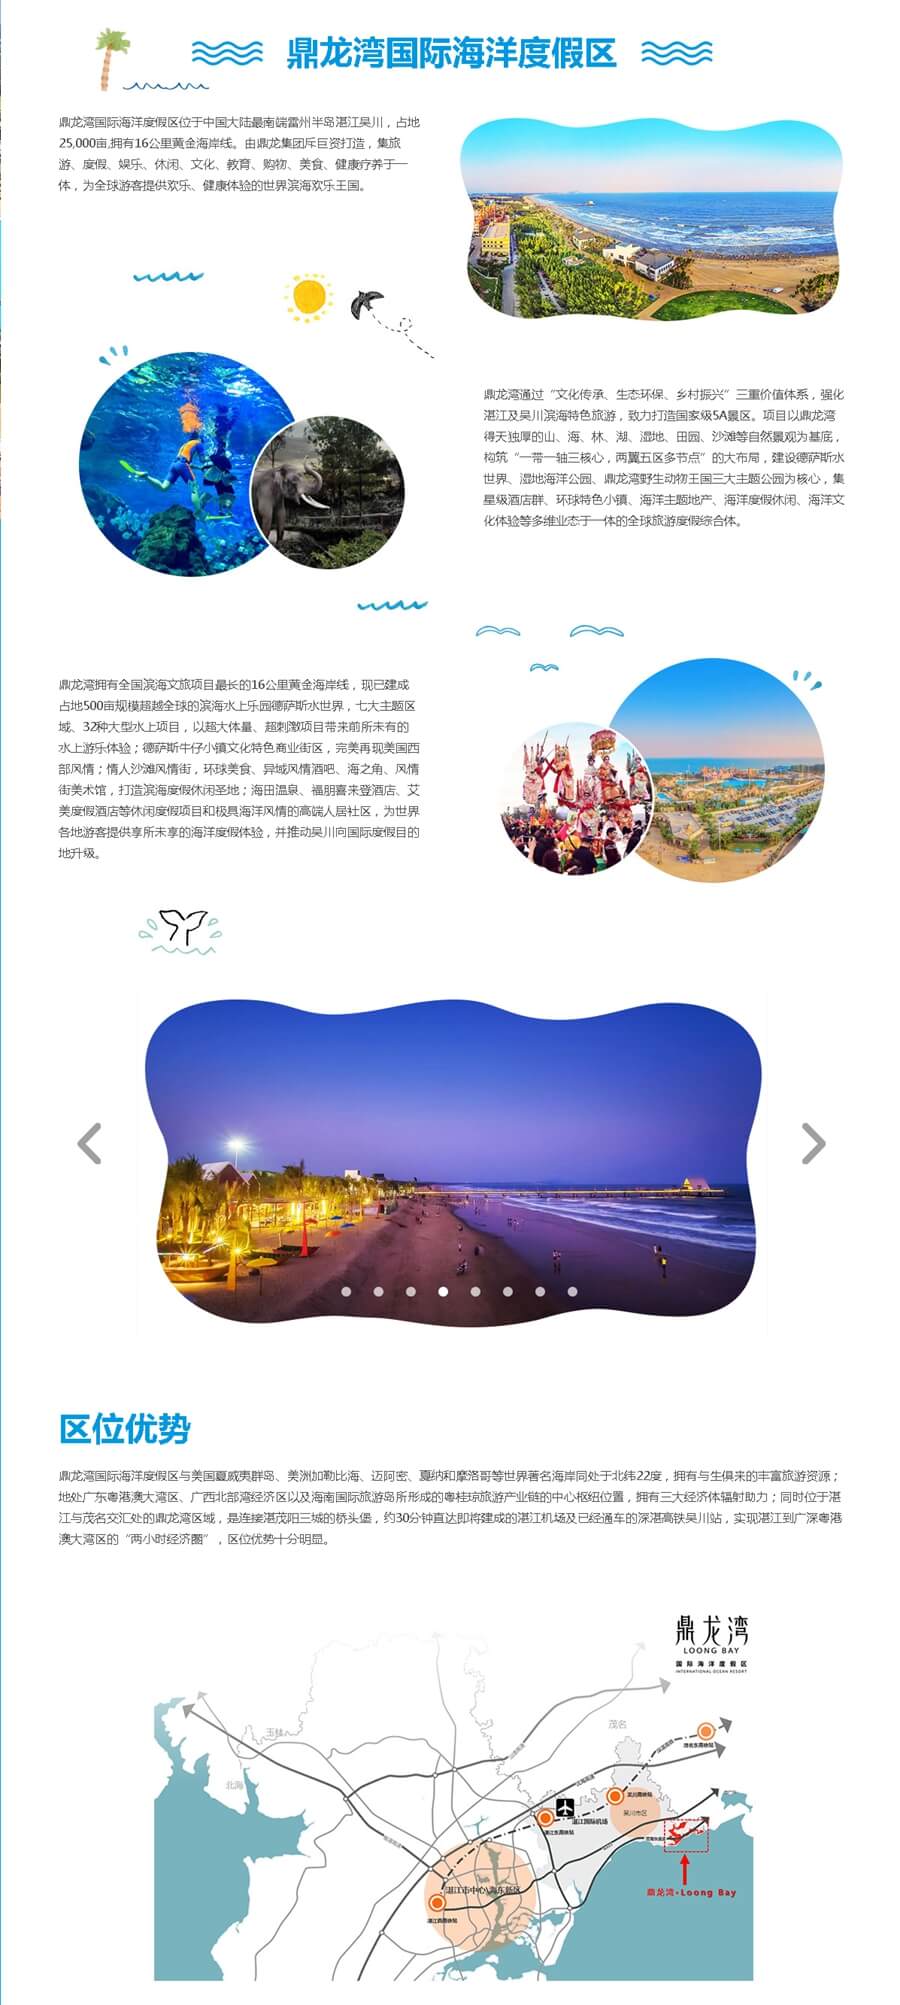 鼎龙湾国际海洋度假区.jpg